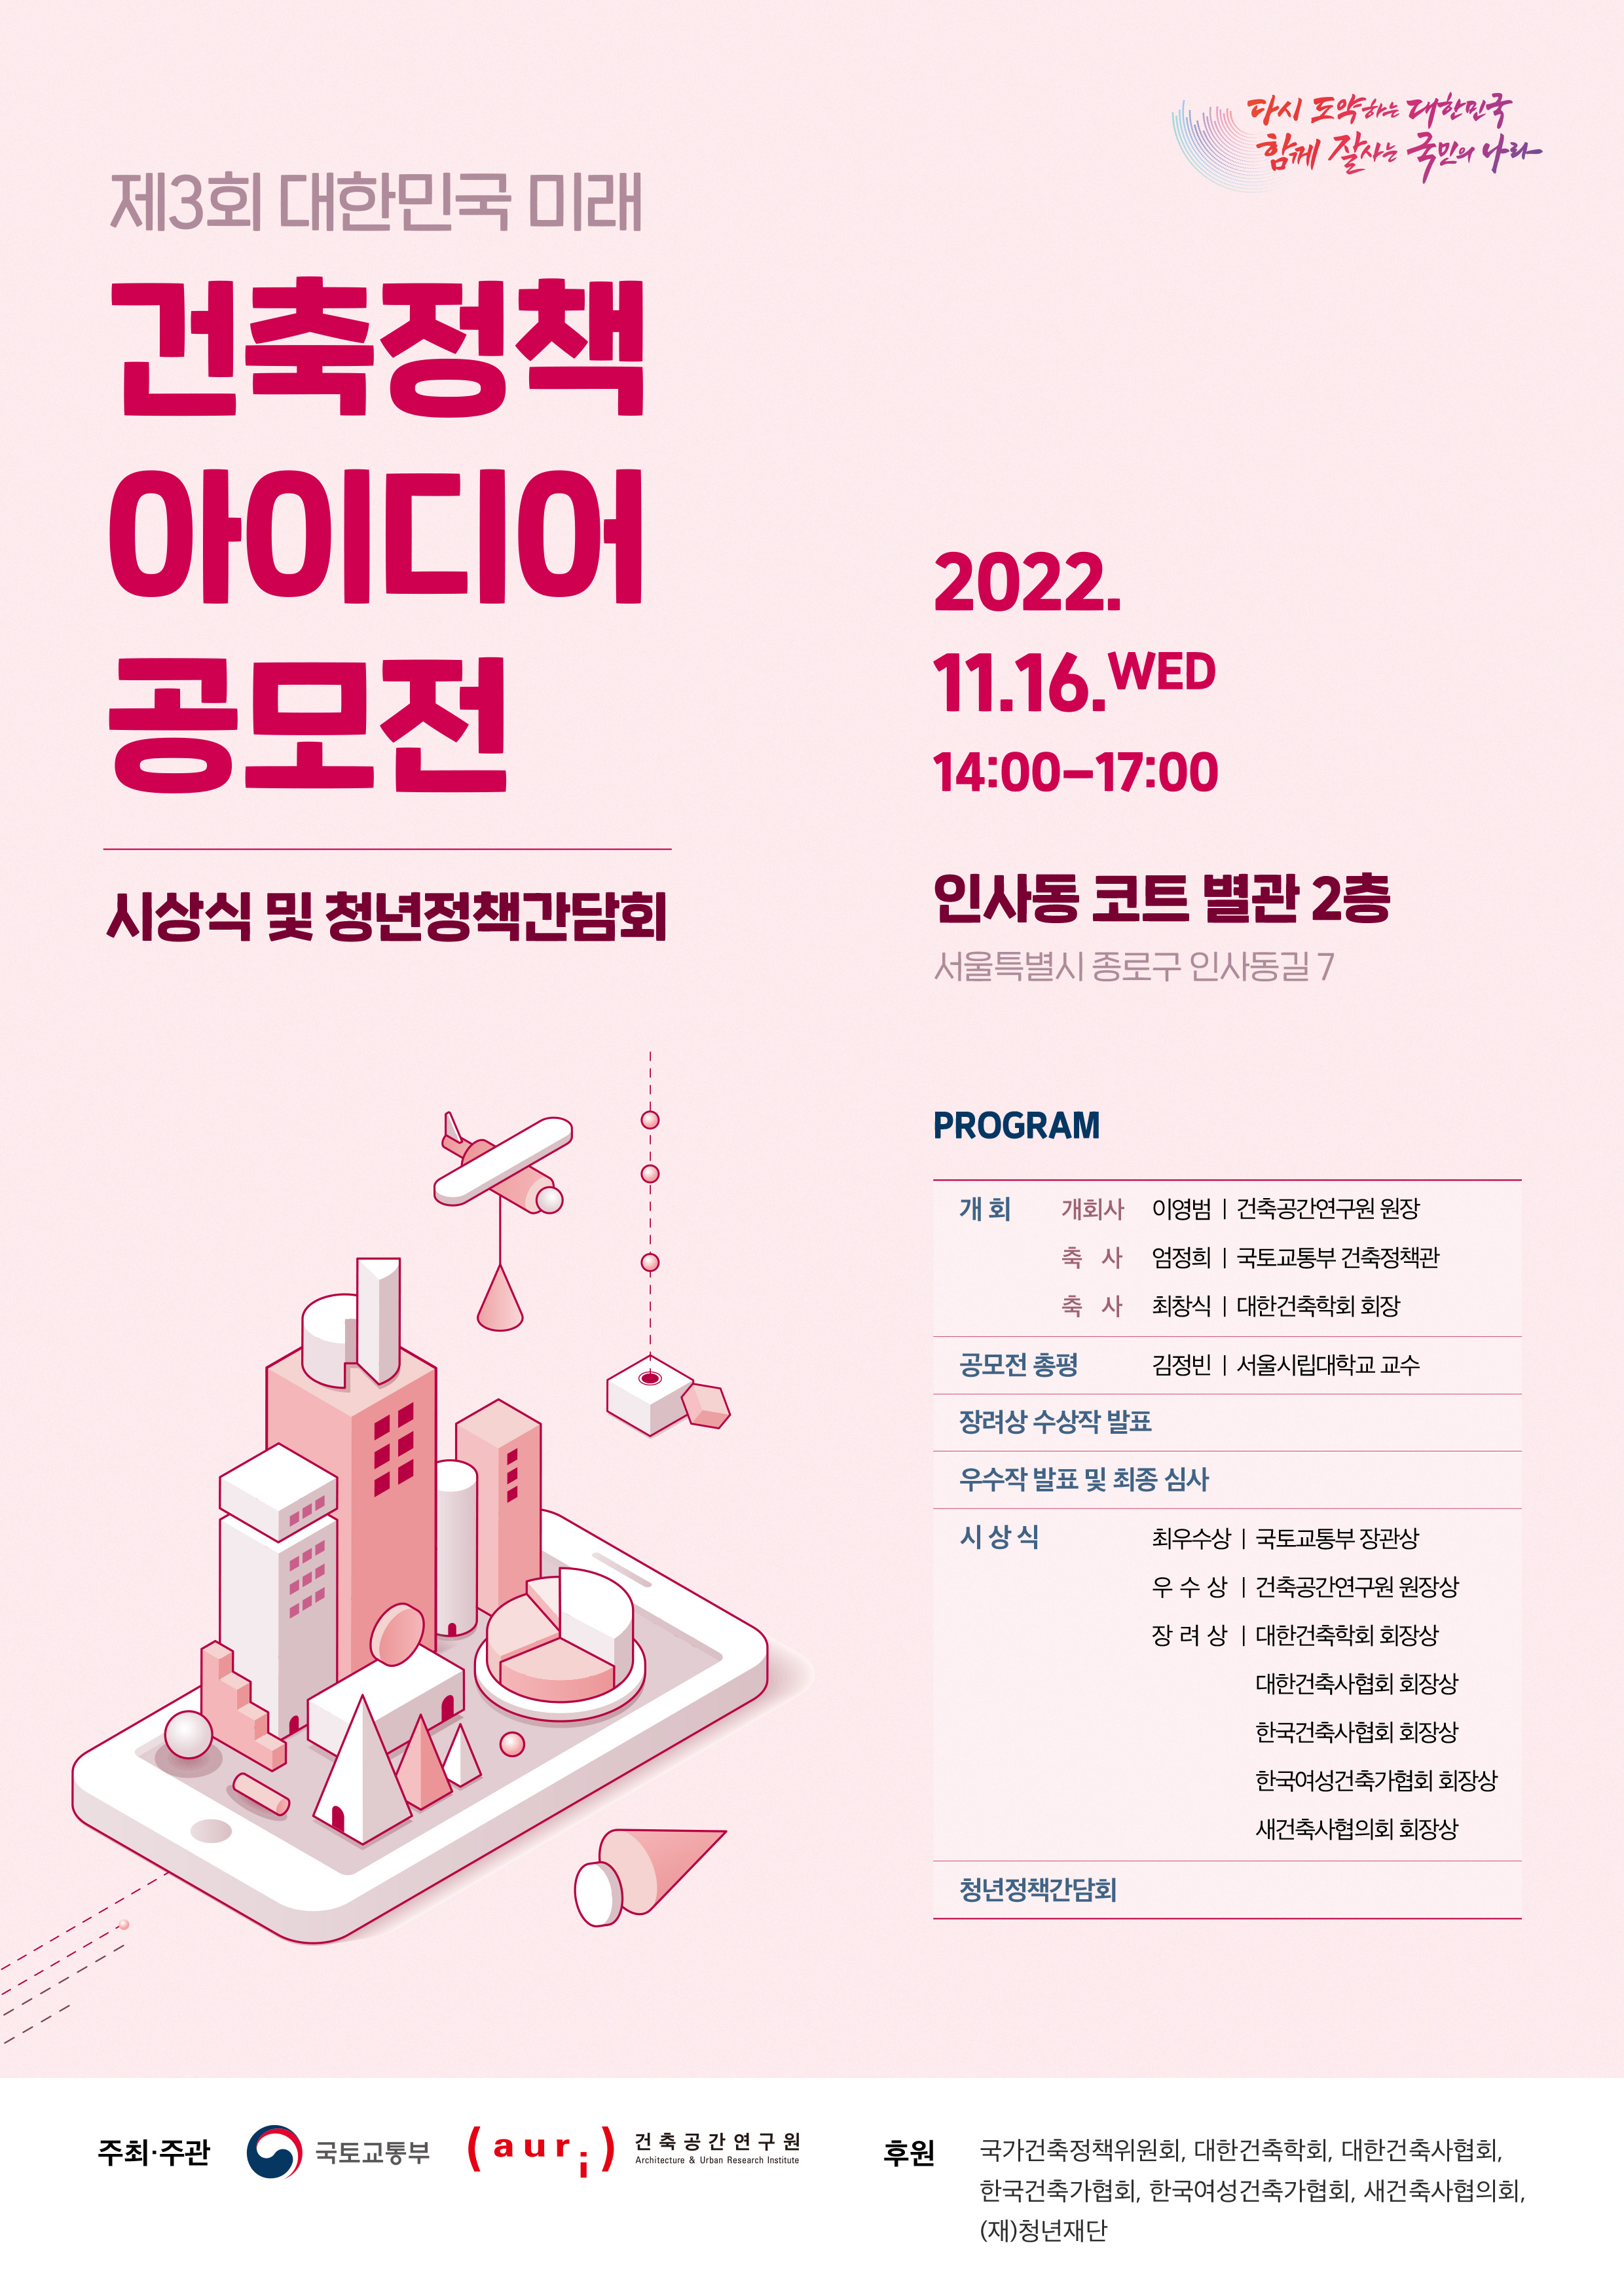 제3회 대한민국 미래 건축정책 아이디어 공모전 시상식 및 청년정책간담회 개최